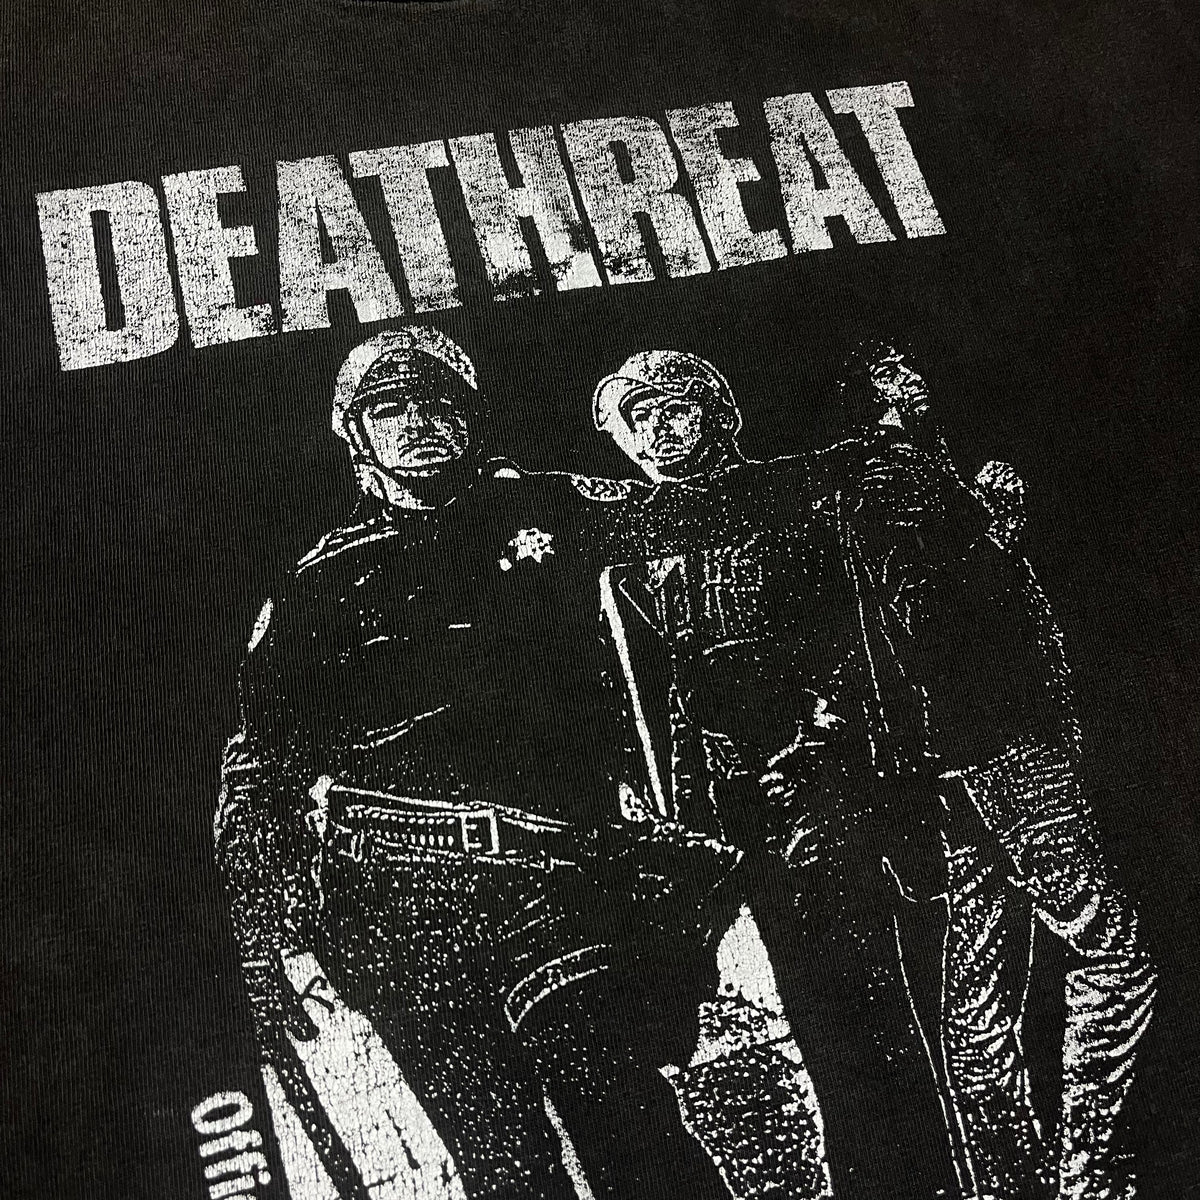 Vintage Deathreat &quot;Chaos Noise&quot; T-Shirt